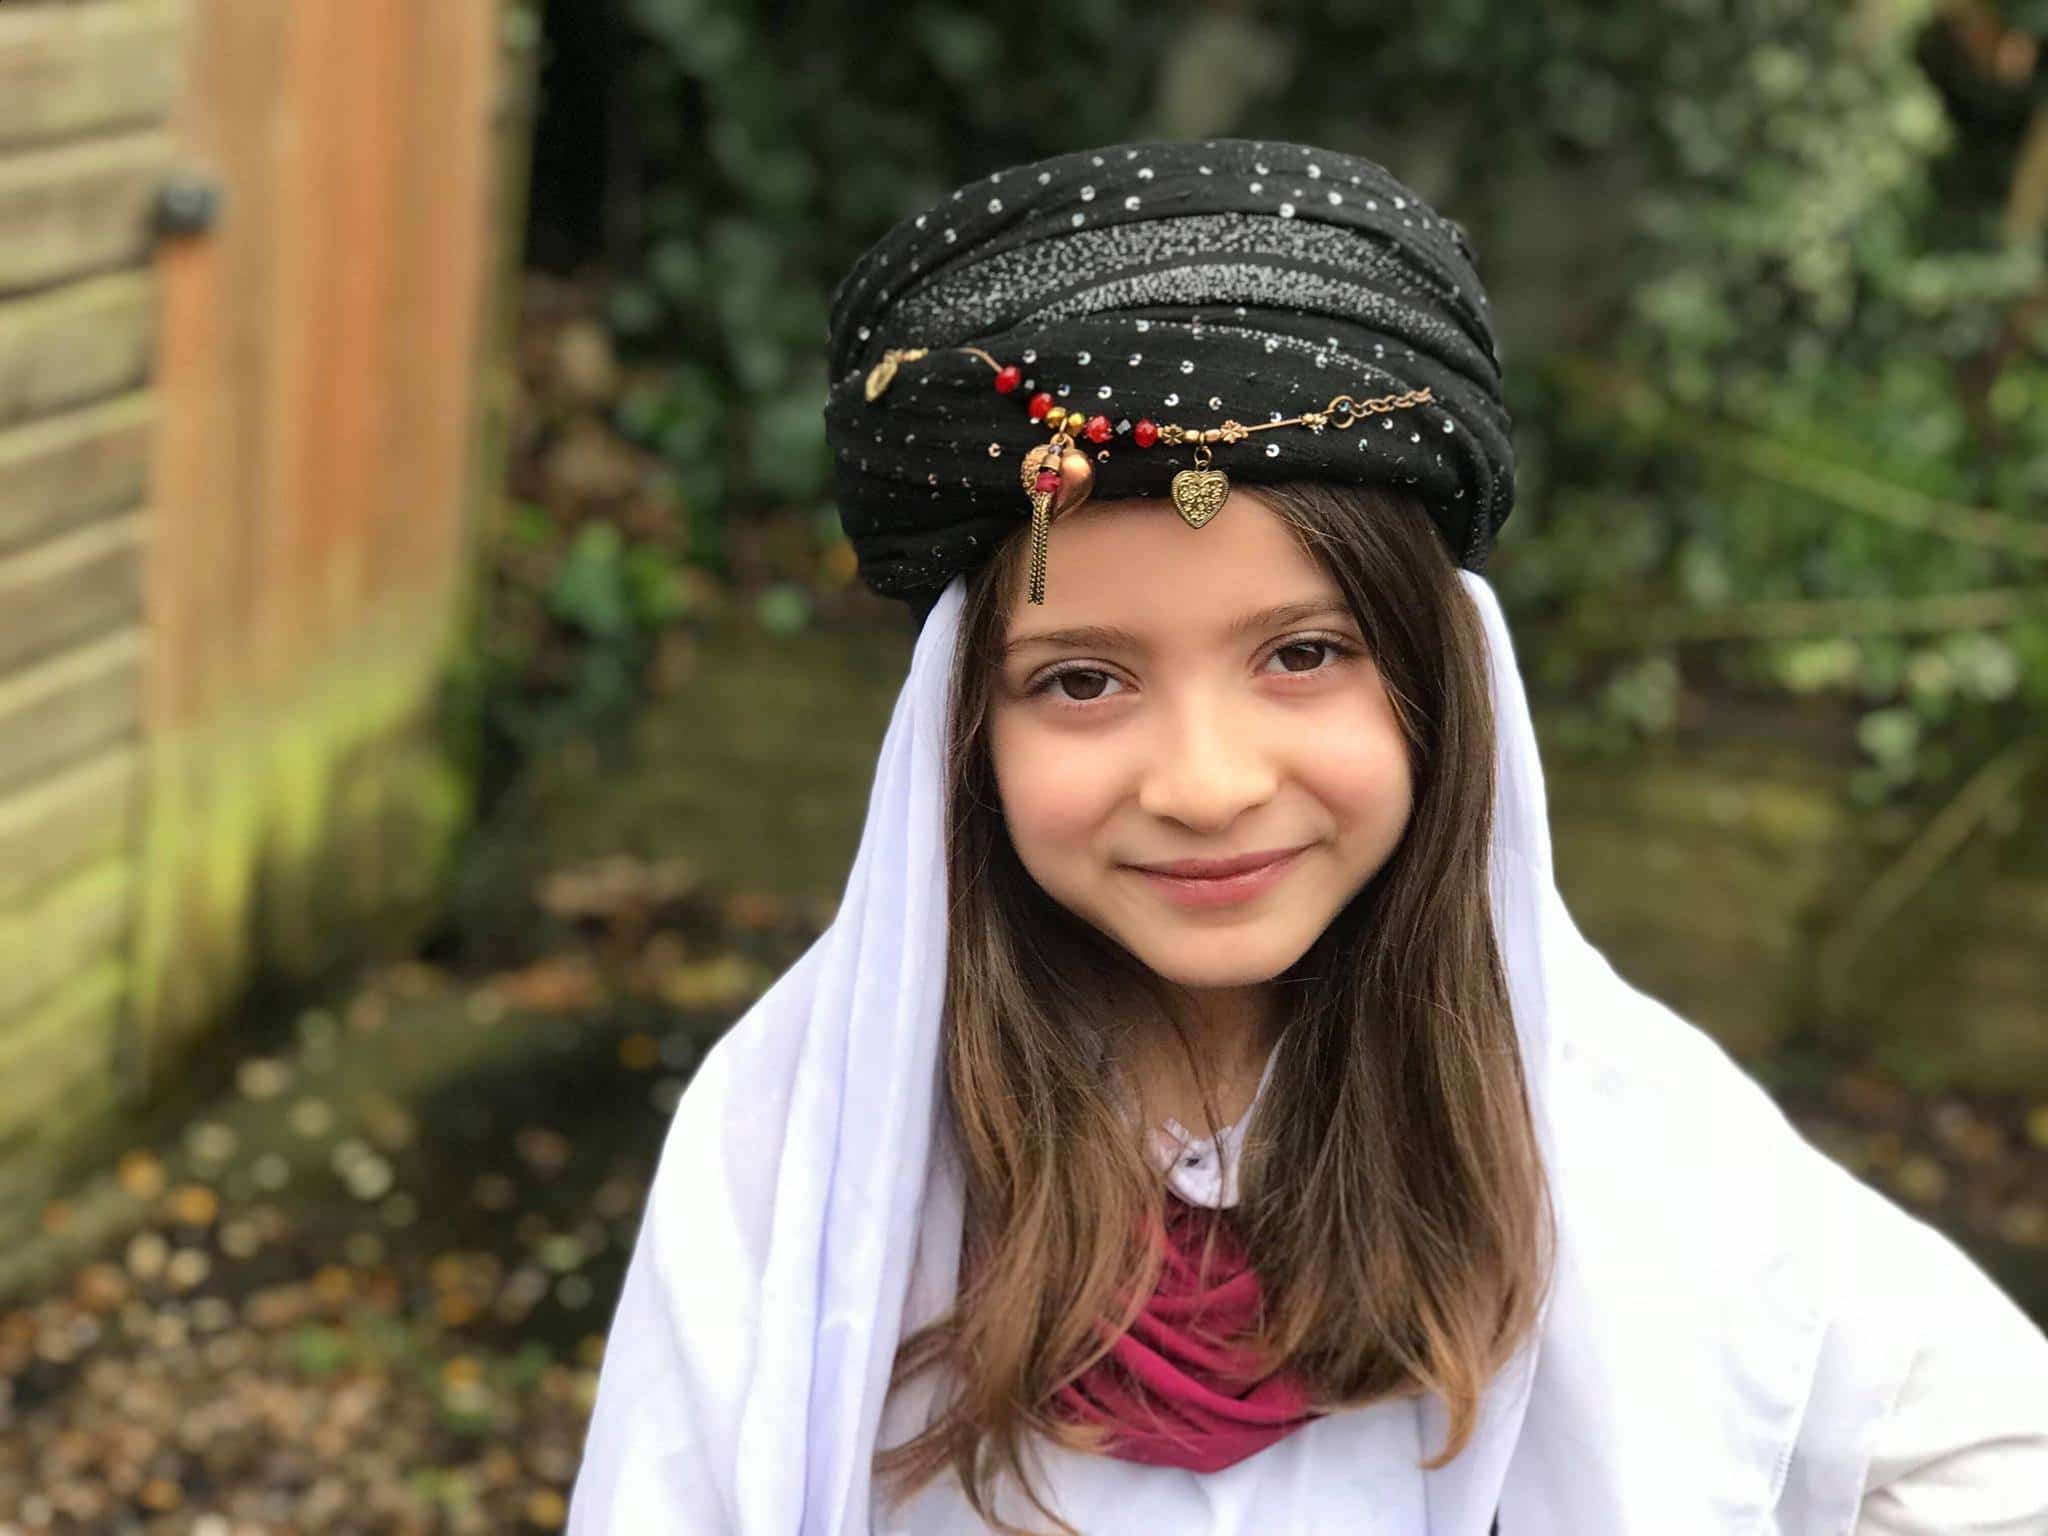 Bambina yazida, Regno Unito